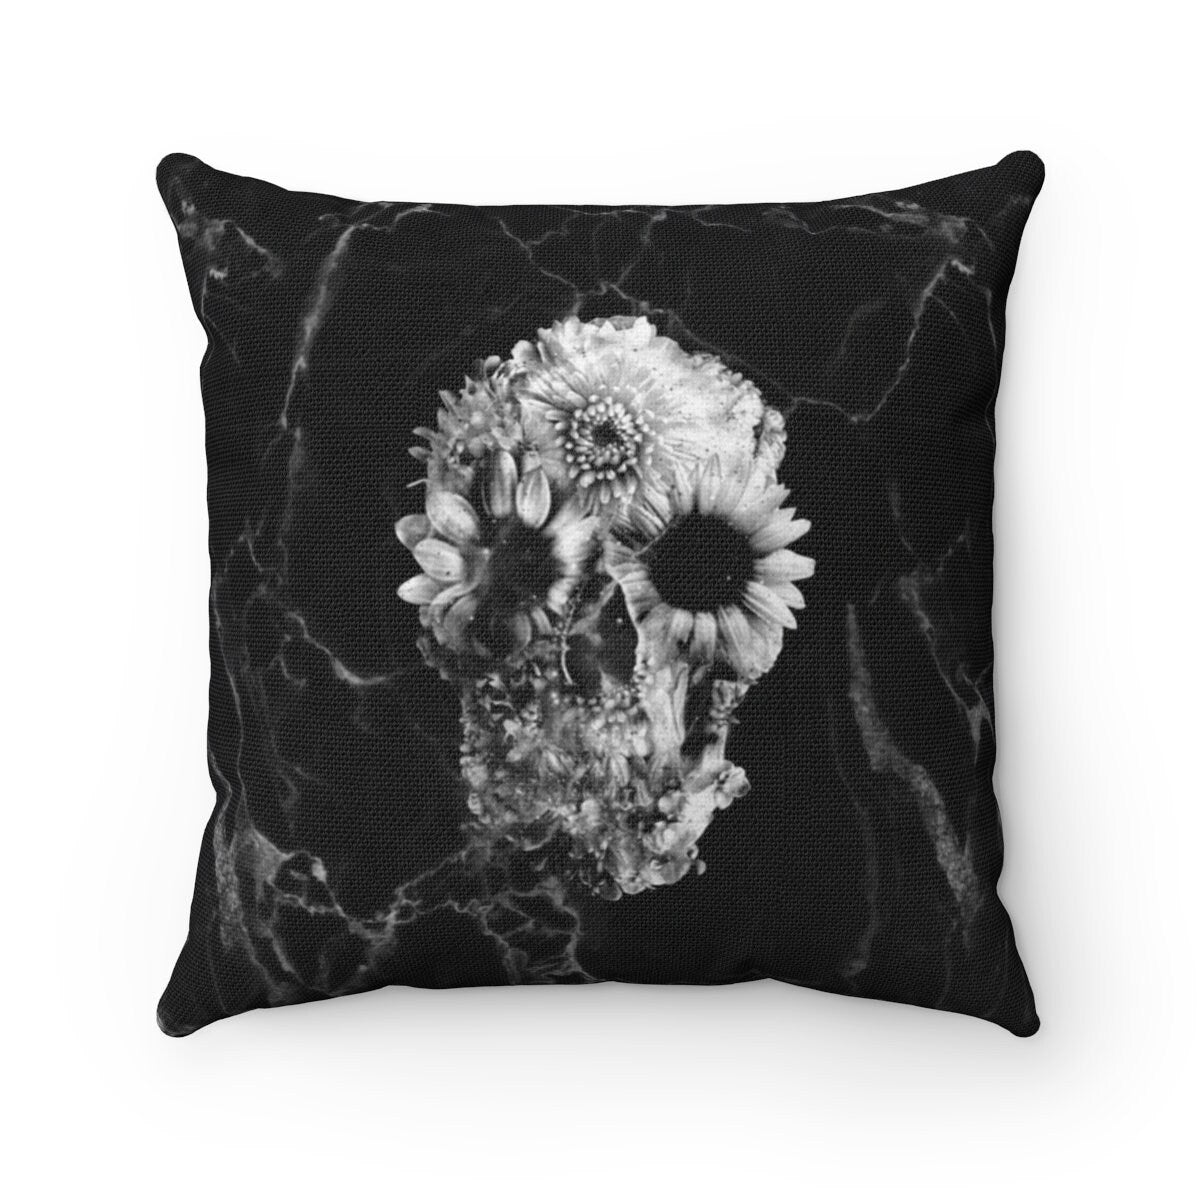 Marble Skull Throw Pillow, Black Floral Skull Spun Polyester Square Pillow, Gothic Sugar Skull Home Decor, Flower Skull Pillow Decor Gift